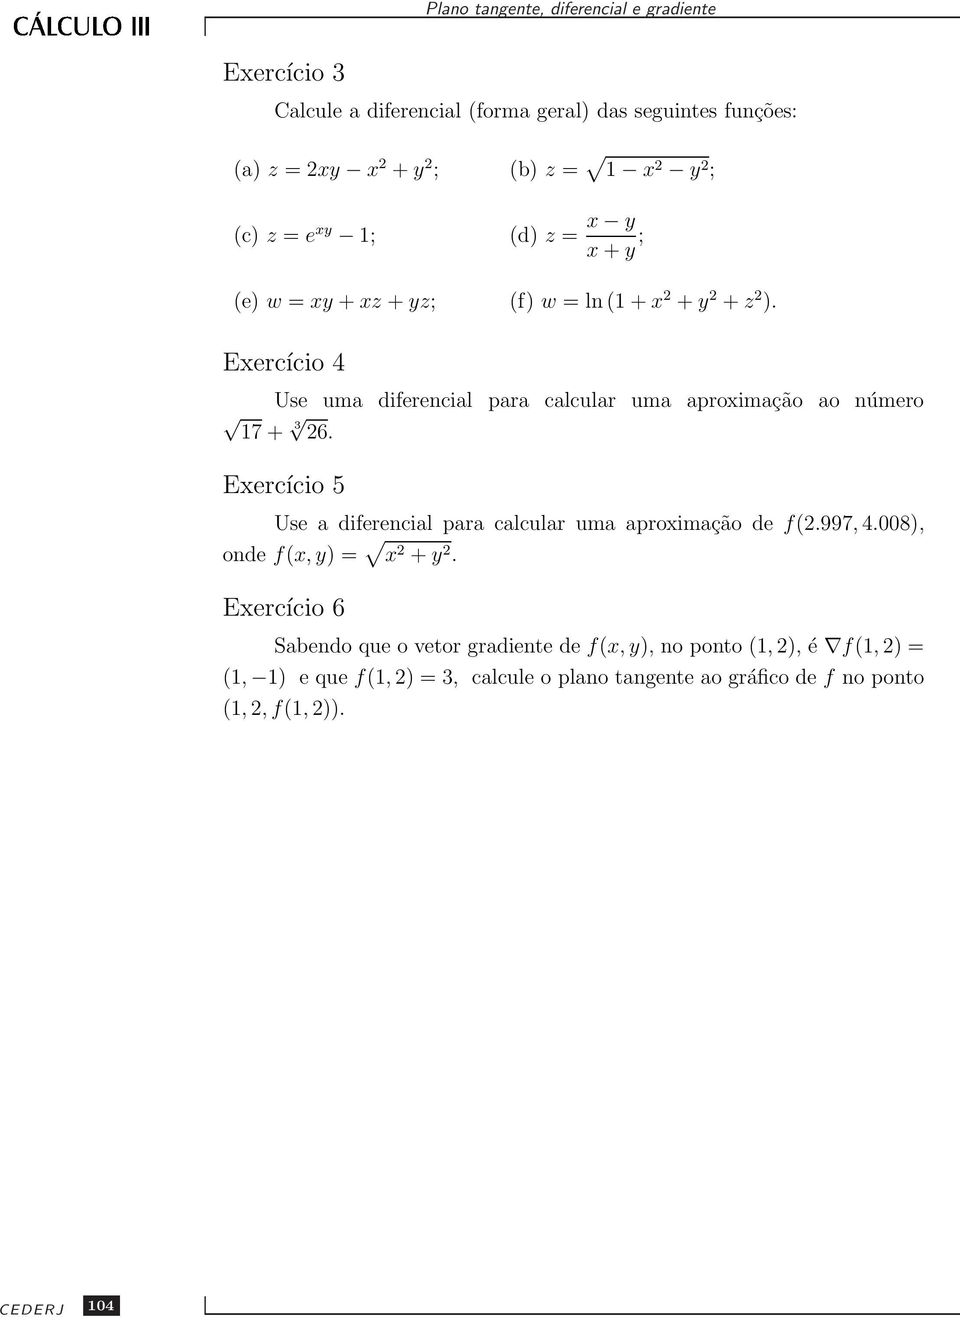 Exercício 5 Use a diferencial para calcular uma aproximação de f(2.997, 4.008), onde f(x, y) = x 2 + y 2.